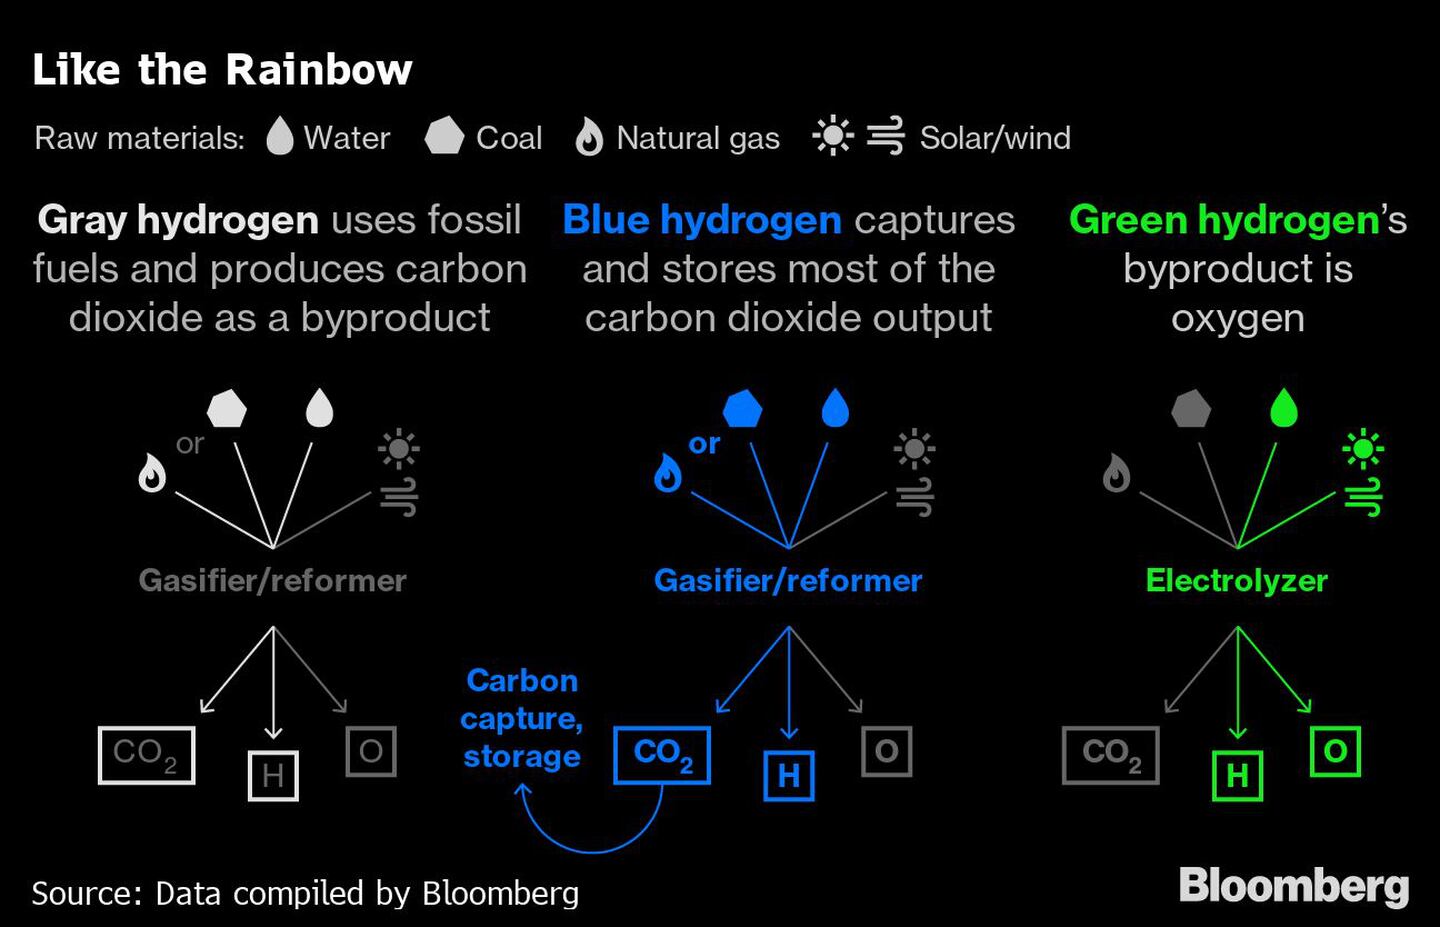 El hidrógeno gris utiliza combustibles fósiles y produce dióxido de carbono como subproducto.
El hidrógeno azul captura y almacena la mayor parte de la producción de dióxido de carbono.
El subproducto de la hidrona verde es el oxígeno.dfd